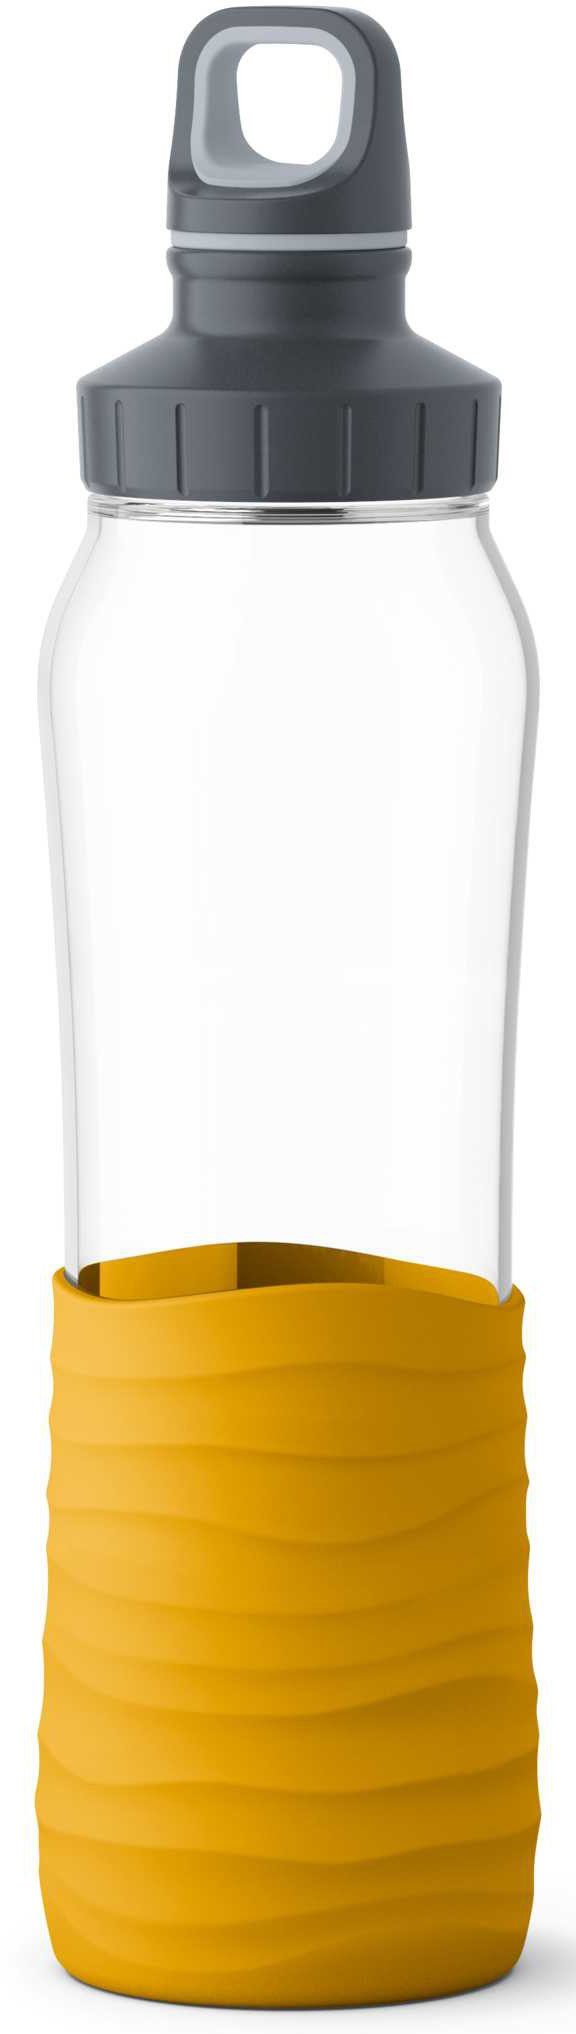 Emsa Trinkflasche »Drink2Go«, Glas, Fassungsvermögen: 0,7 Liter,  Schraubverschluss, 100% dicht, spülmaschinenfest, sicherer und  unbedenklicher Trinkgenuss, 2-Wege-Öffnung, Griff mit Soft-Touch, rein und  geschmacksneutral online kaufen | OTTO